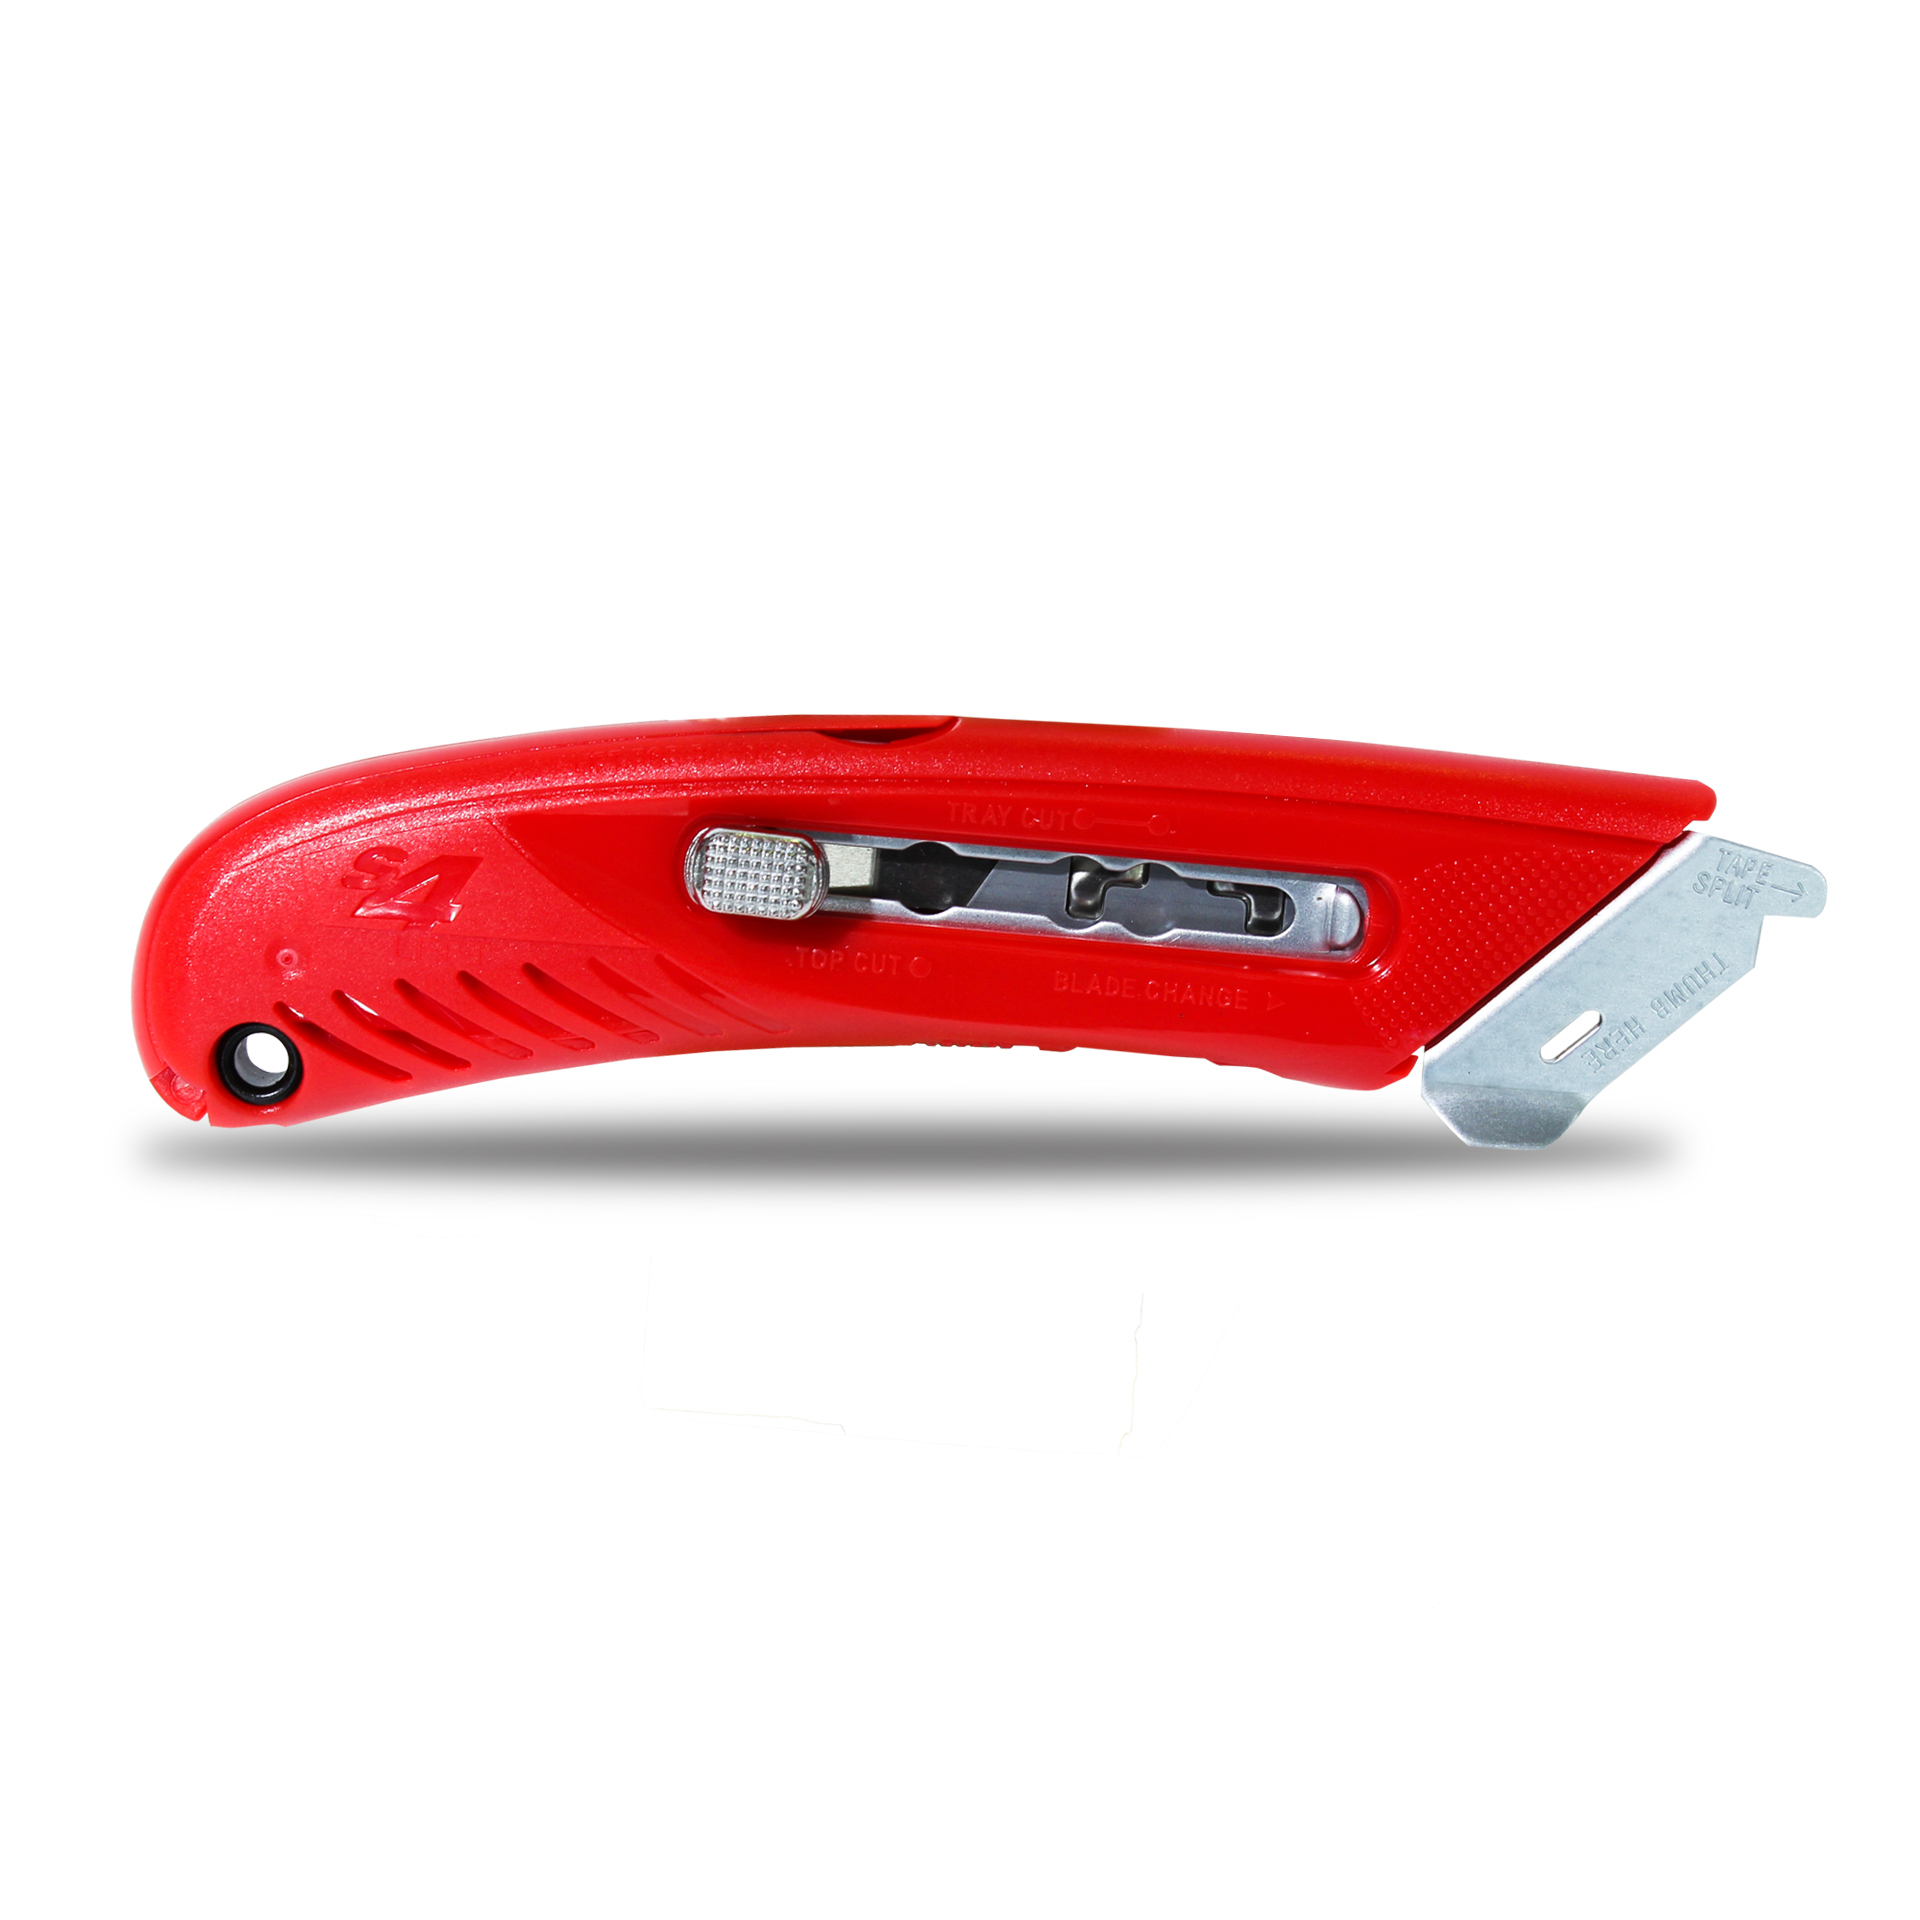 คัตเตอร์นิรภัยอเนกประสงค์ PHC S4 Safety Cutter สีแดง